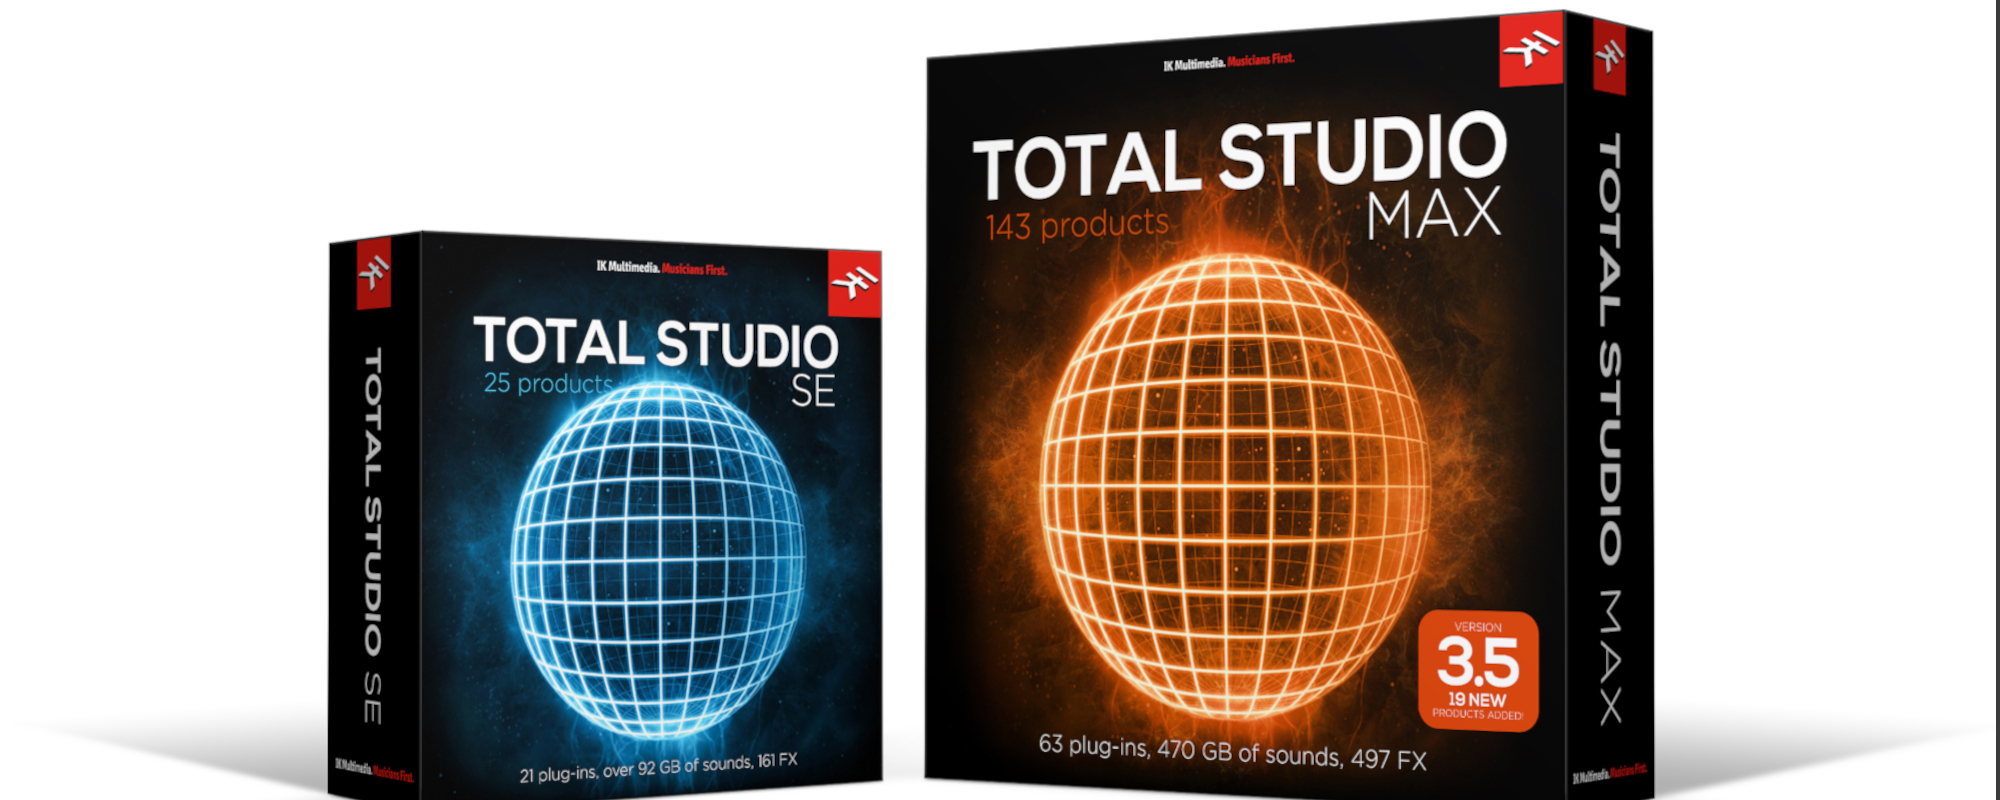 Gear Review: IK Multimedia Total Studio 3.5 Max and Total VI Max bundles